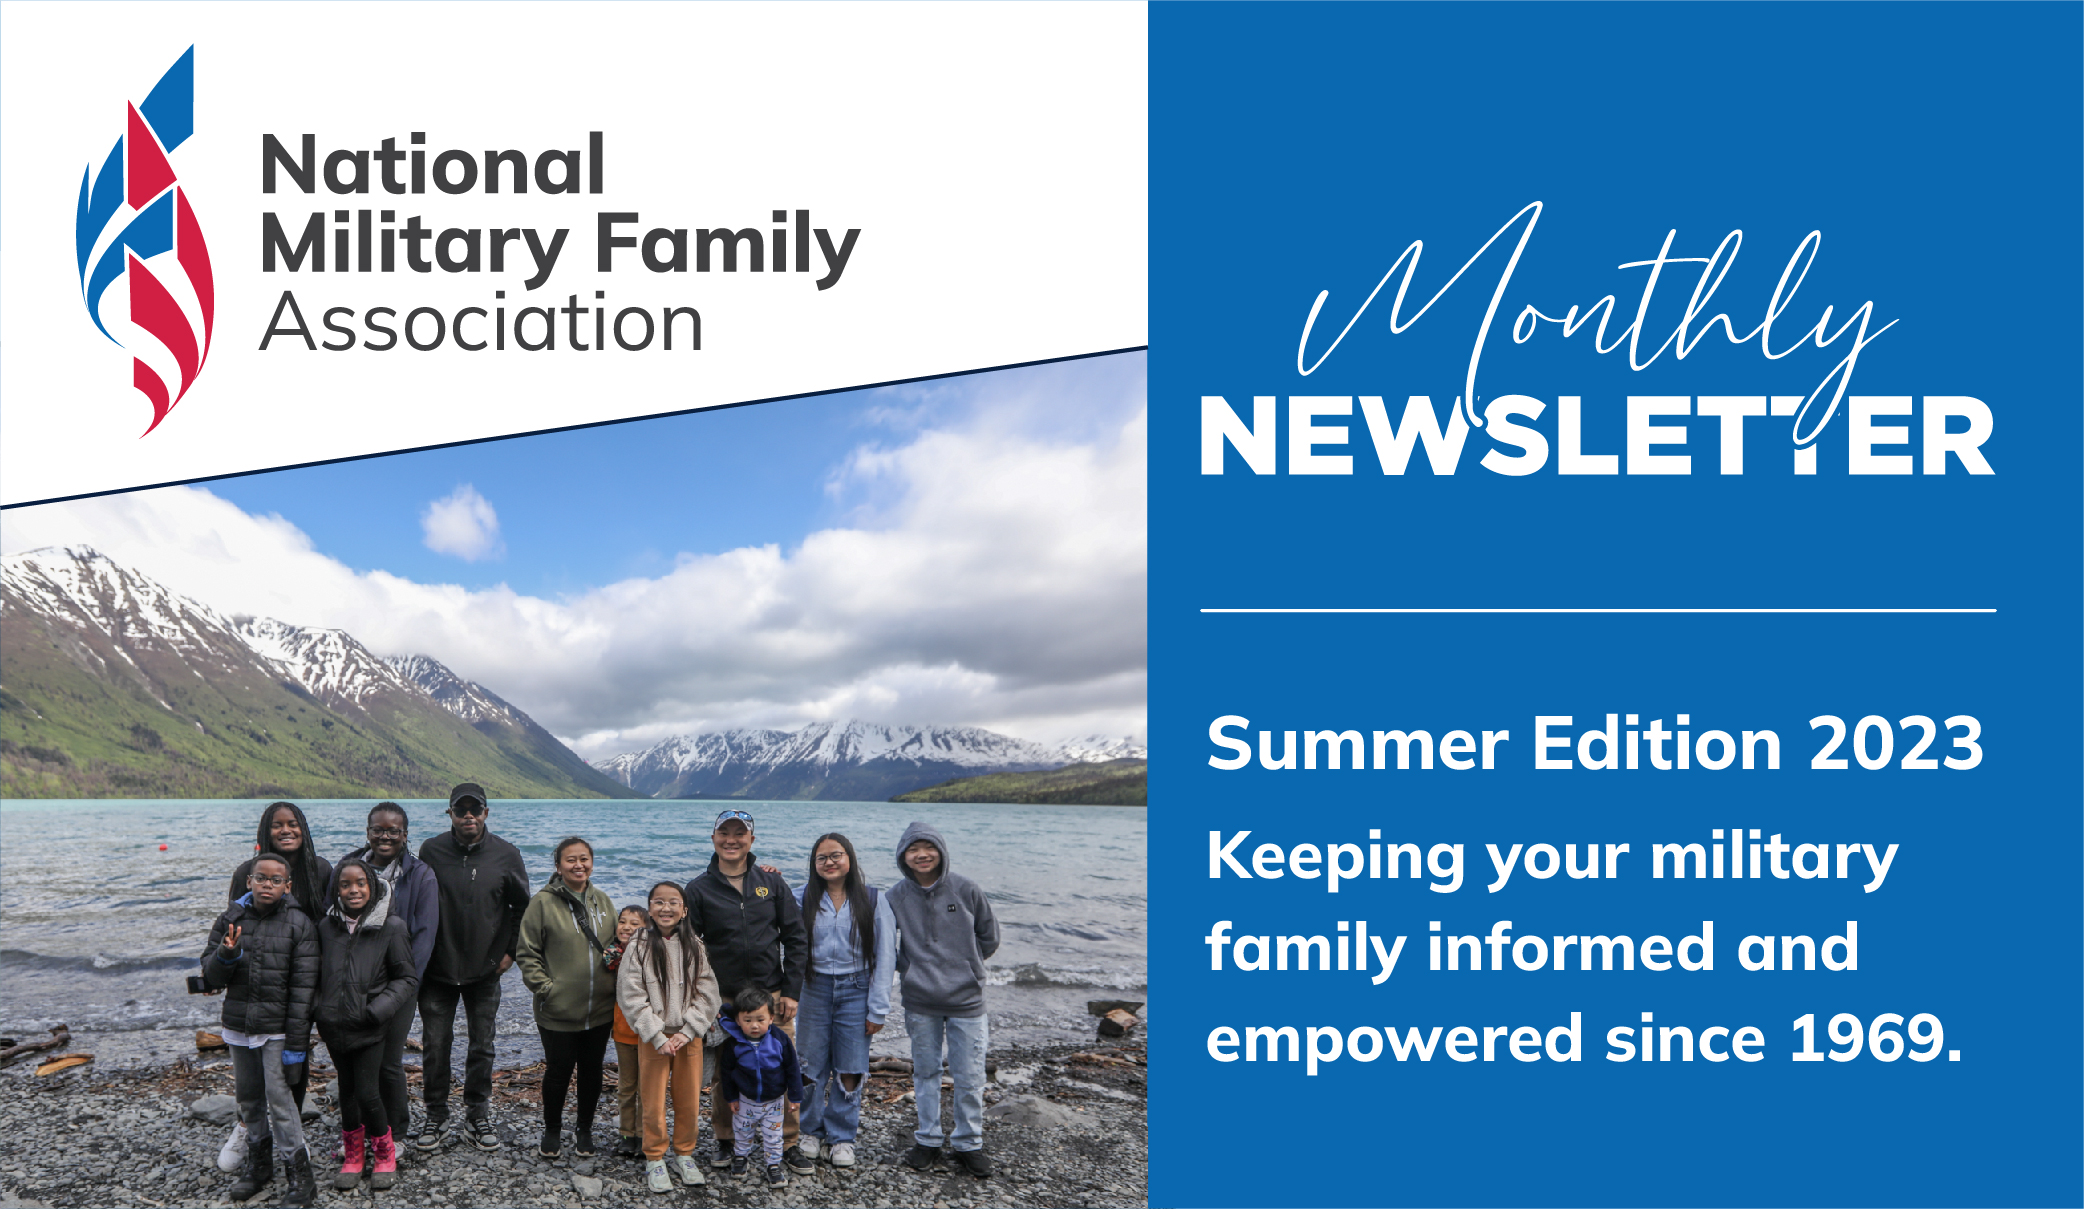 National Military Family Association Summer 2023 Video Newsletter Newsletter